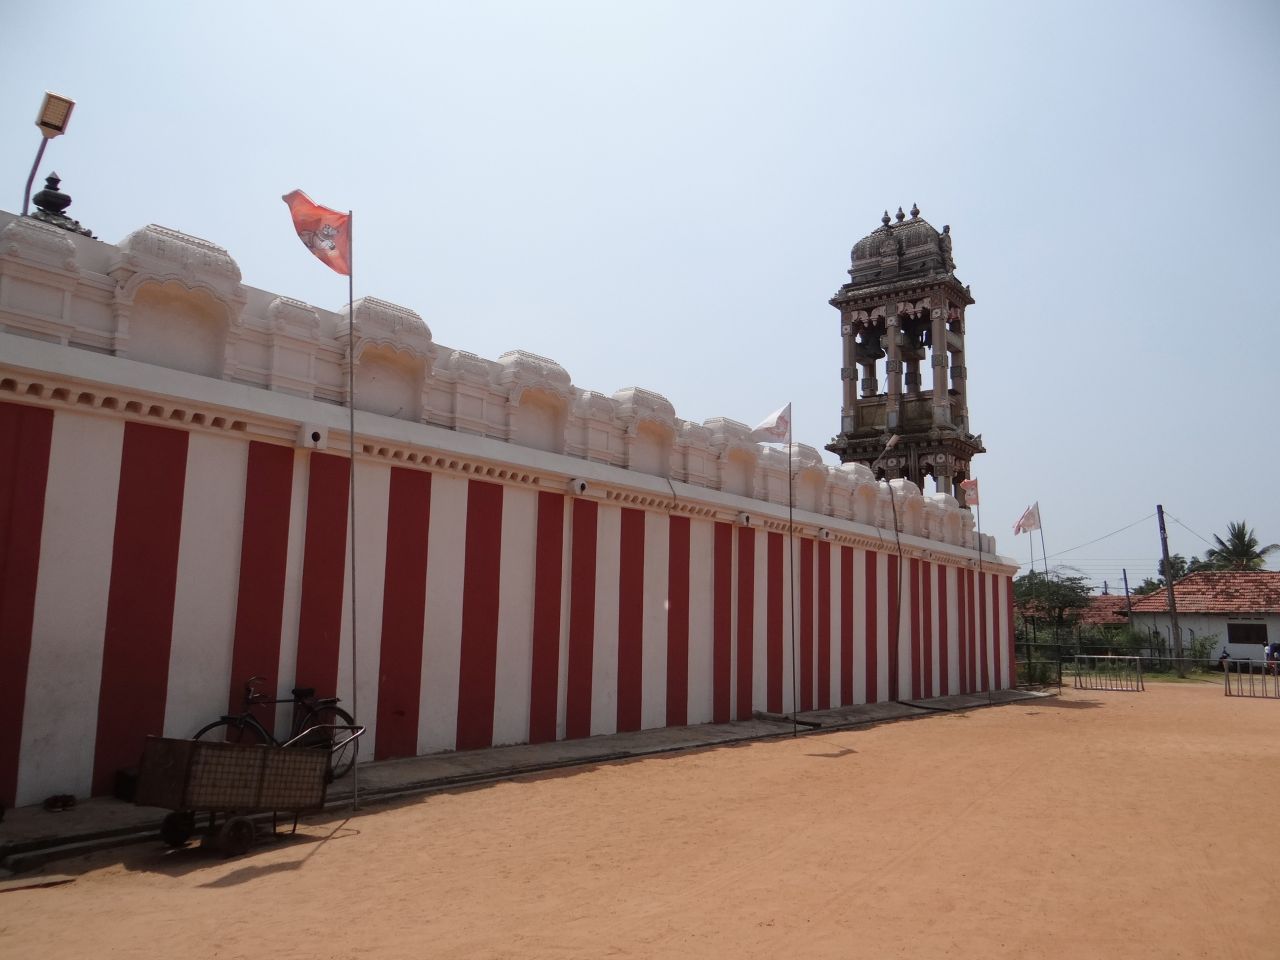 Едем дальше.... в город  Чилау, где располагается храм Муннешварам, входящий в наследие РАМАЯНЫ. - Шри-Ланка 2017. Часть 1.